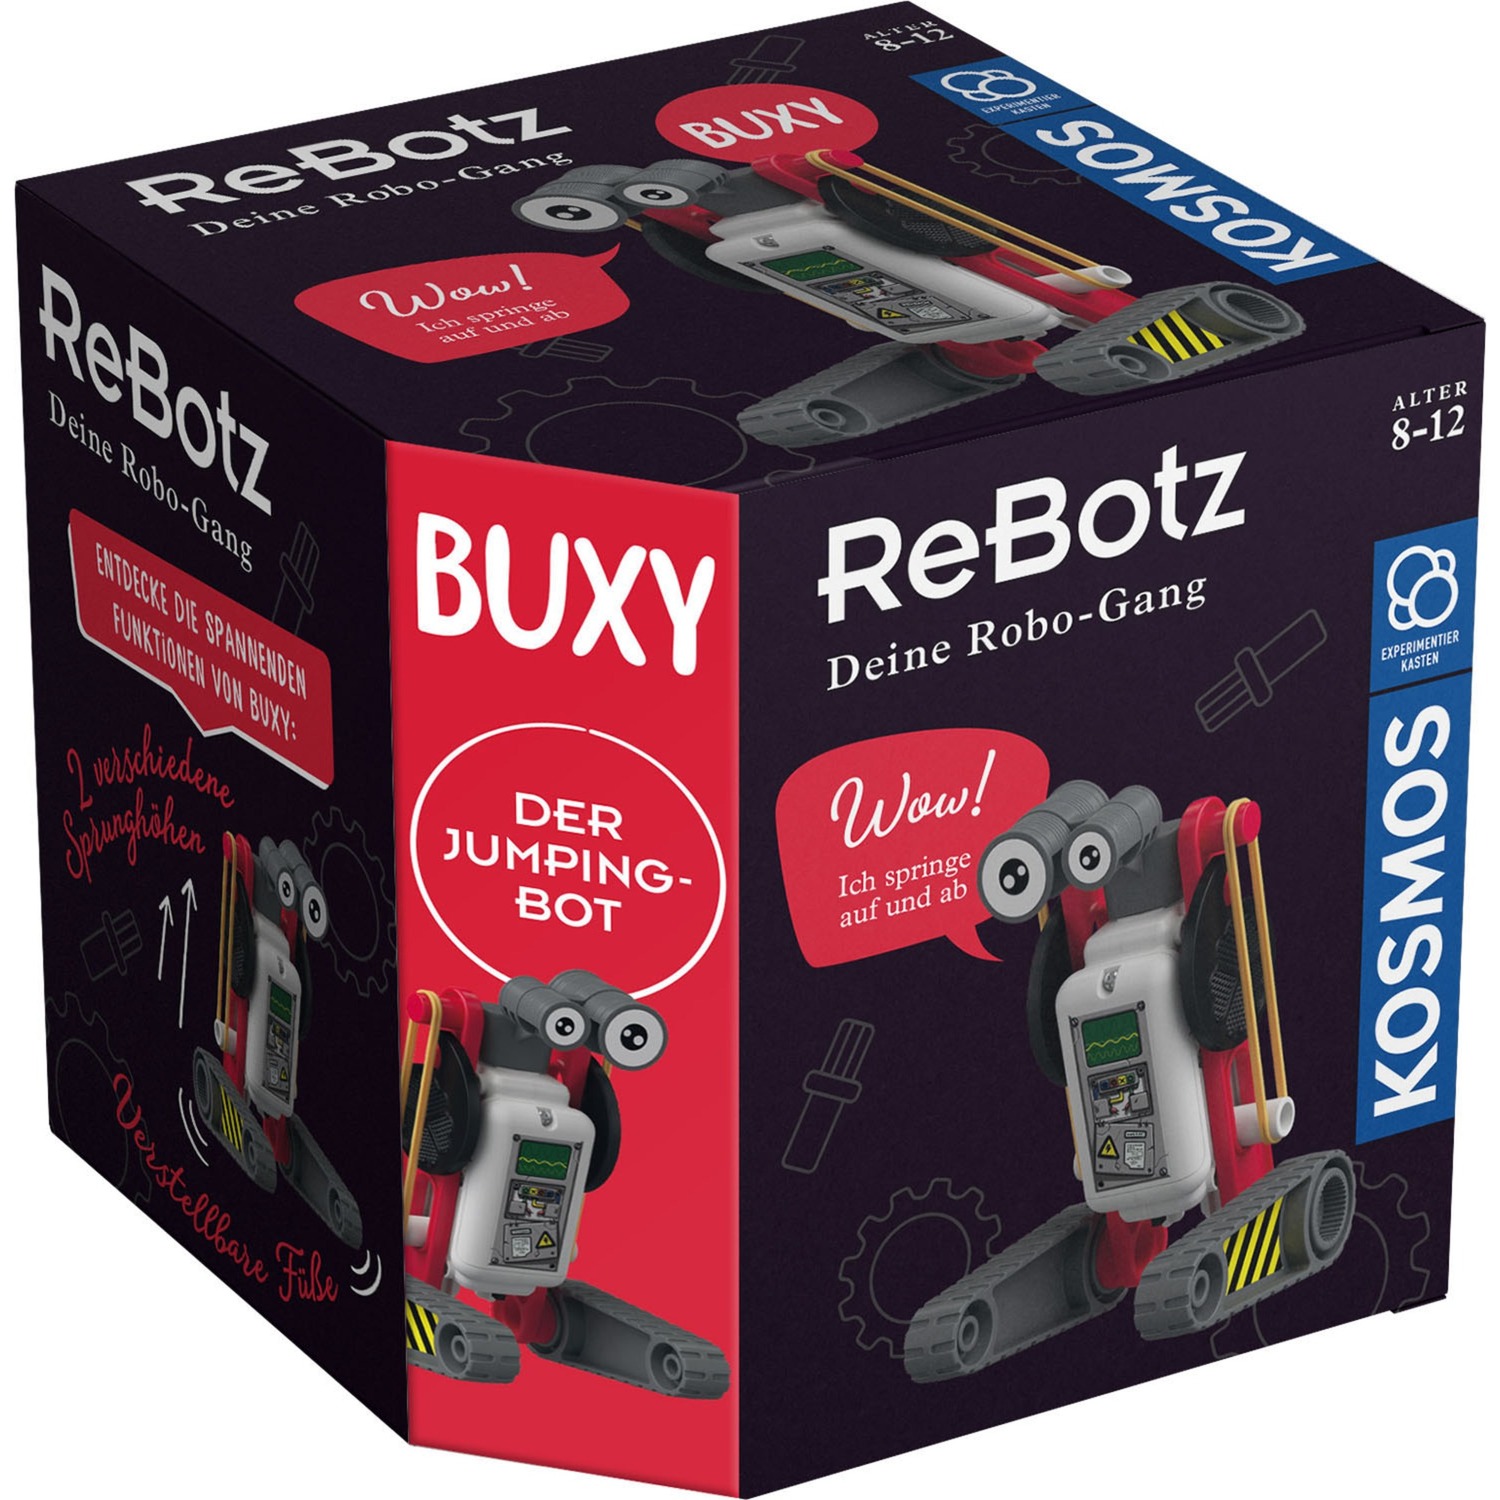 Image of Alternate - ReBotz - Buxy der Jumping-Bot, Experimentierkasten online einkaufen bei Alternate